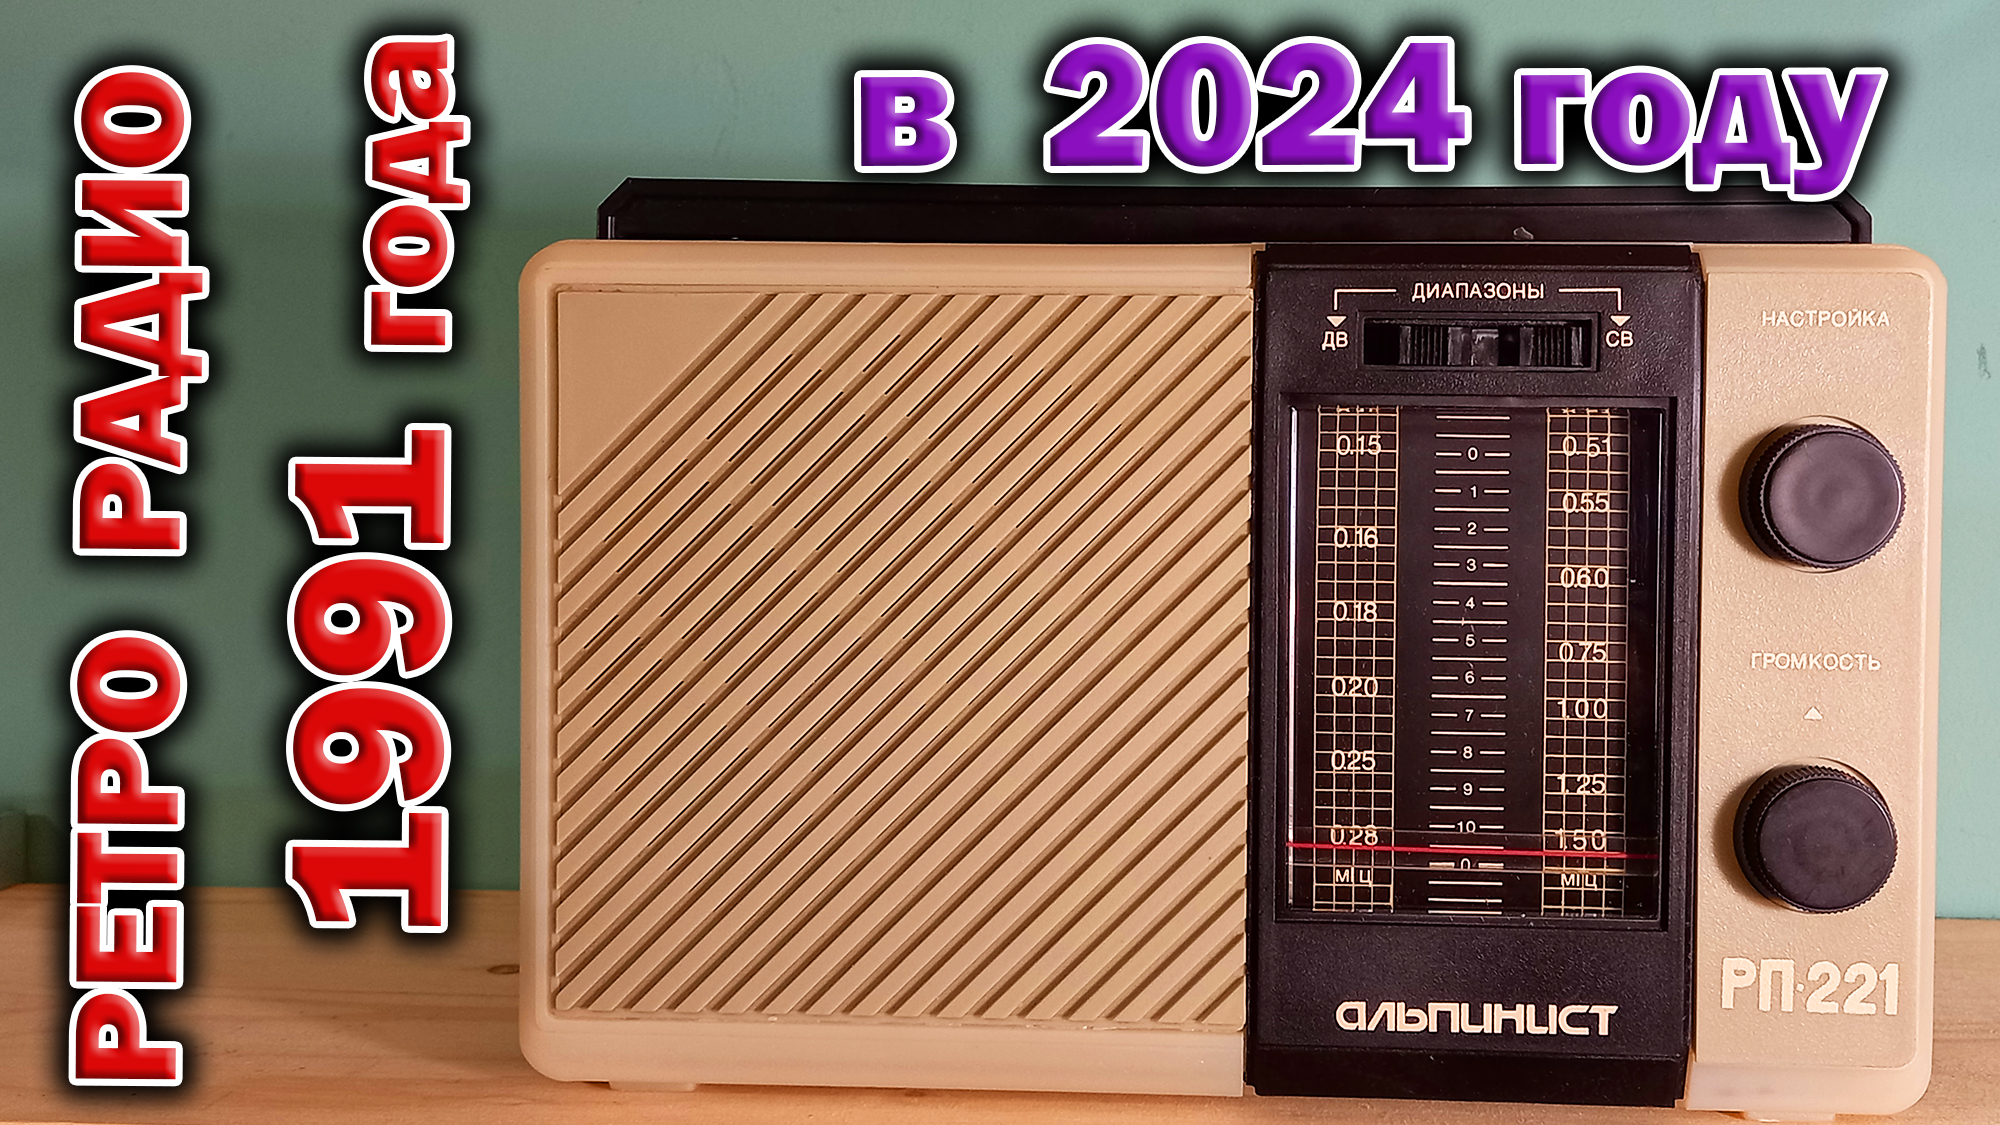 Советский радиоприёмник Альпинист РП-221 1991 года выпуска в 2024 году. Послушаем ?